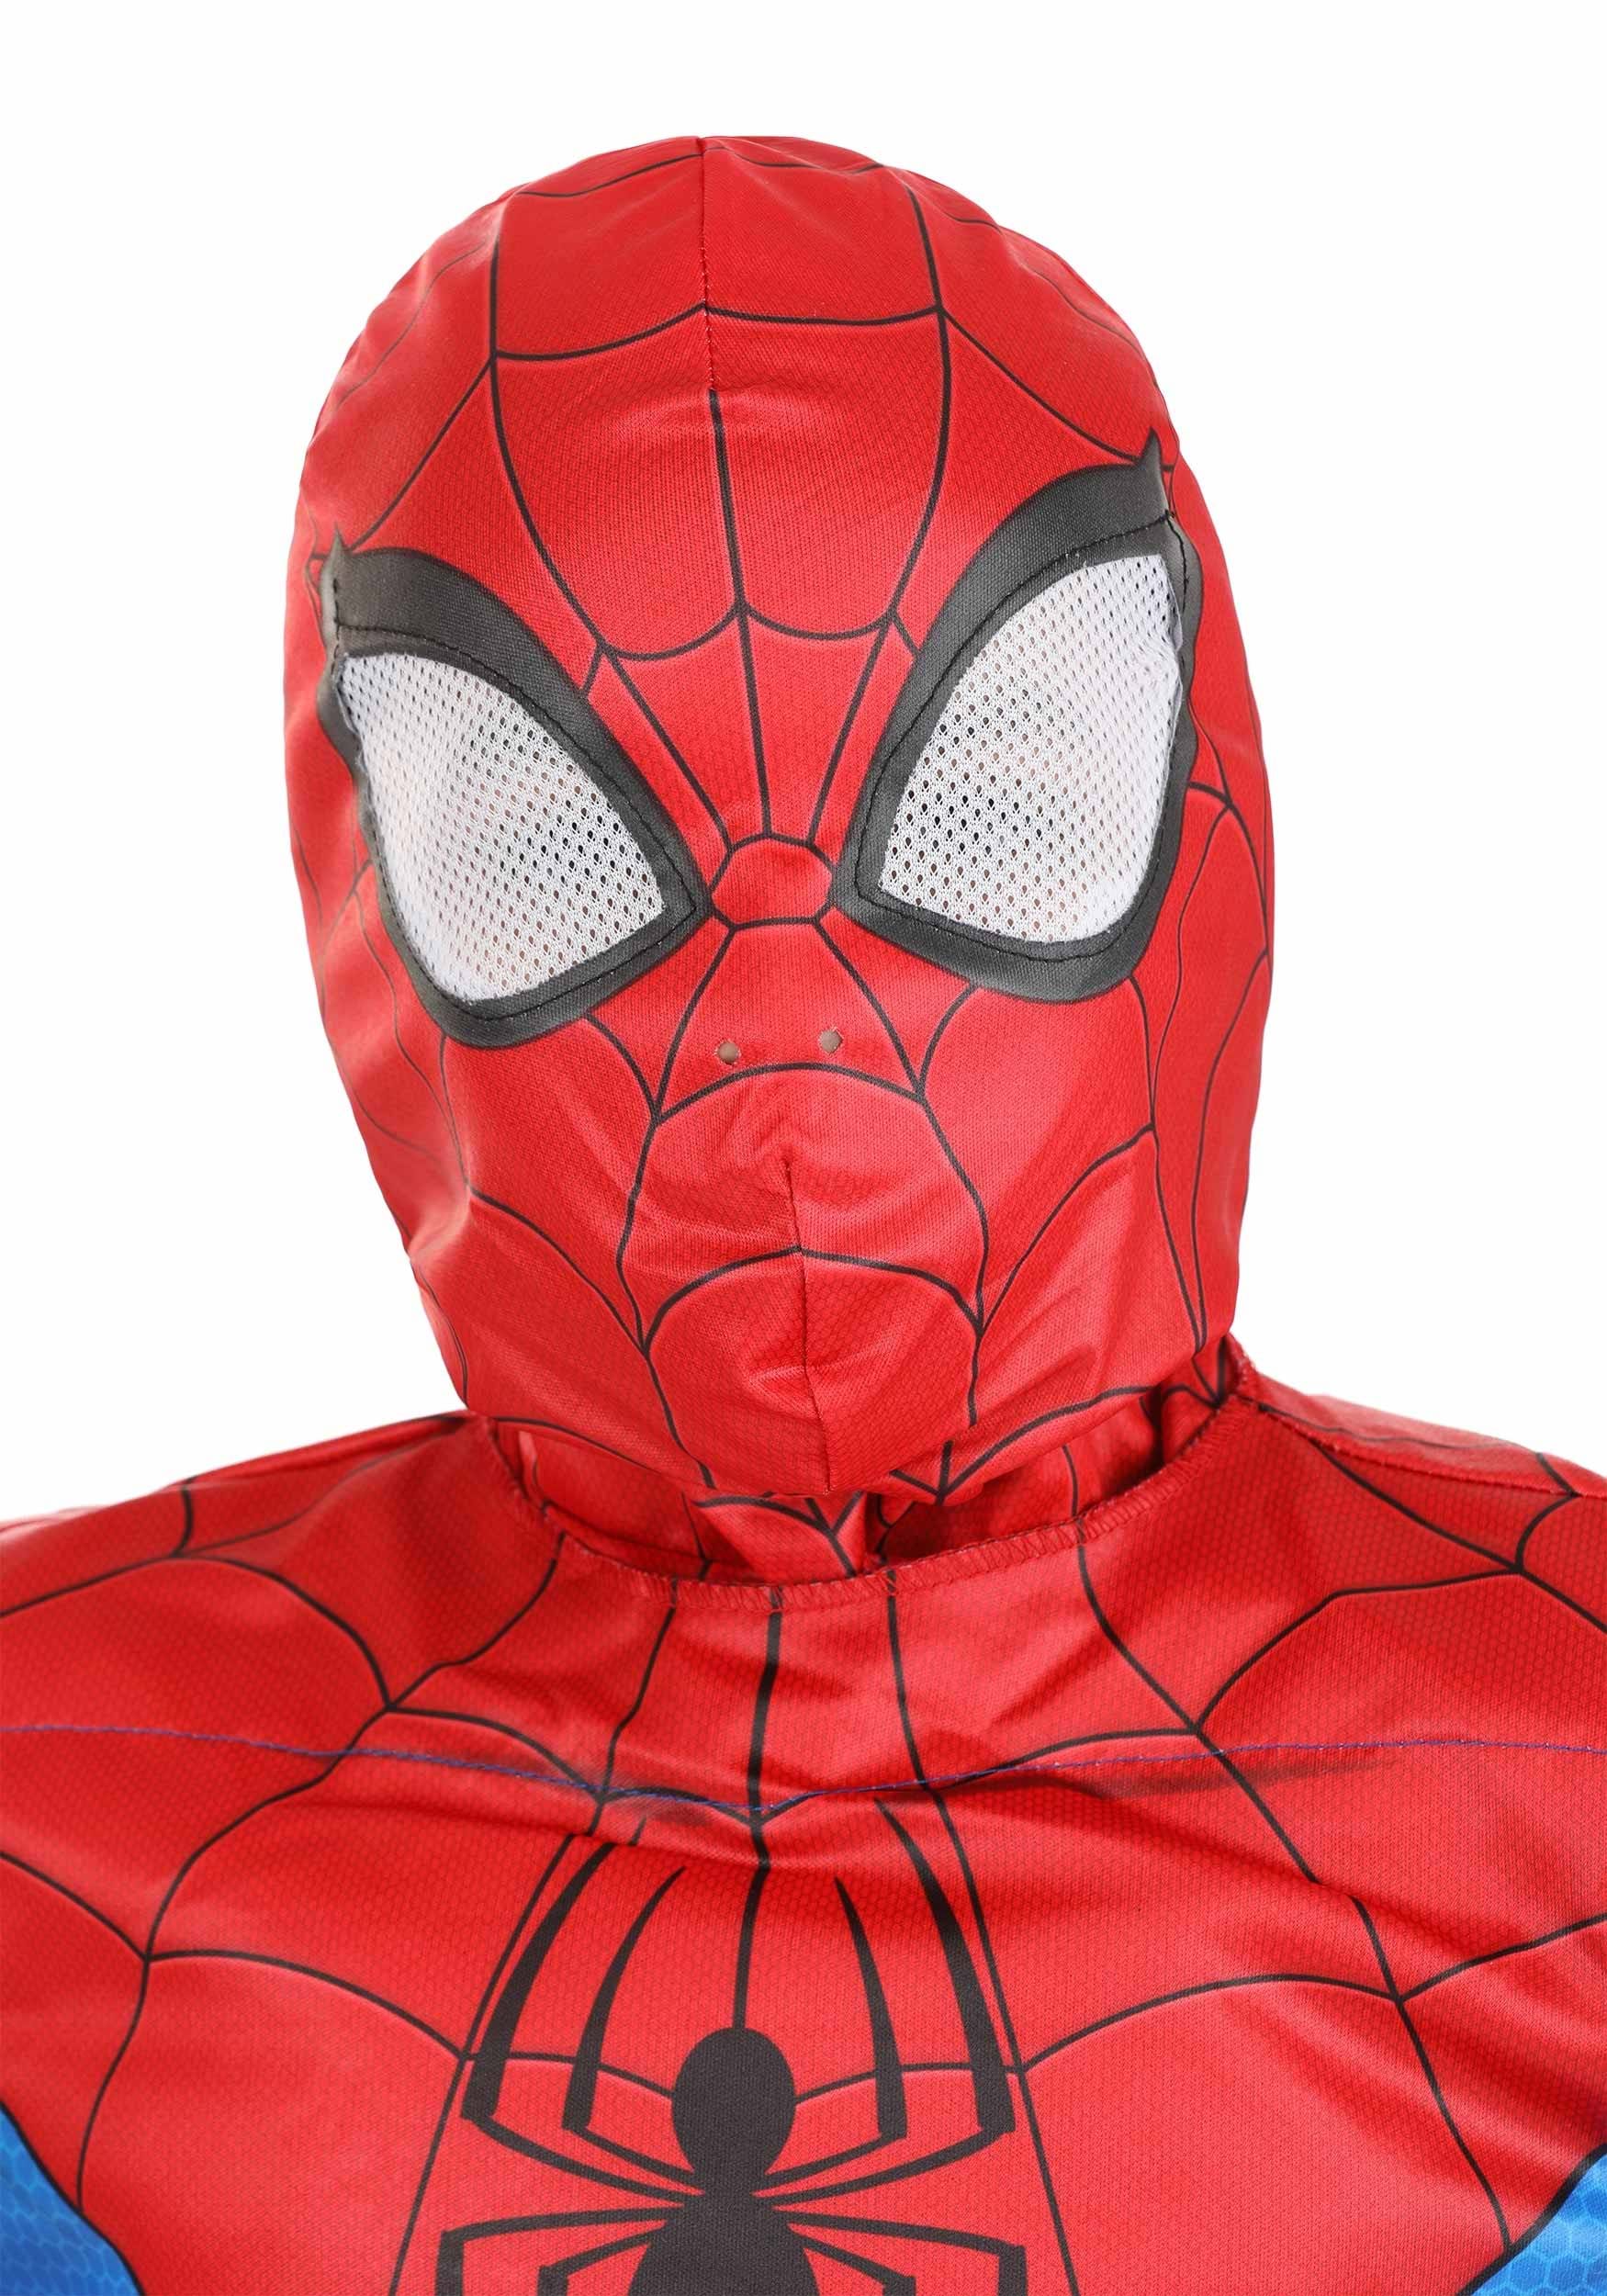 Masque Spiderman - Masque Miles Morales - Masque de Hero